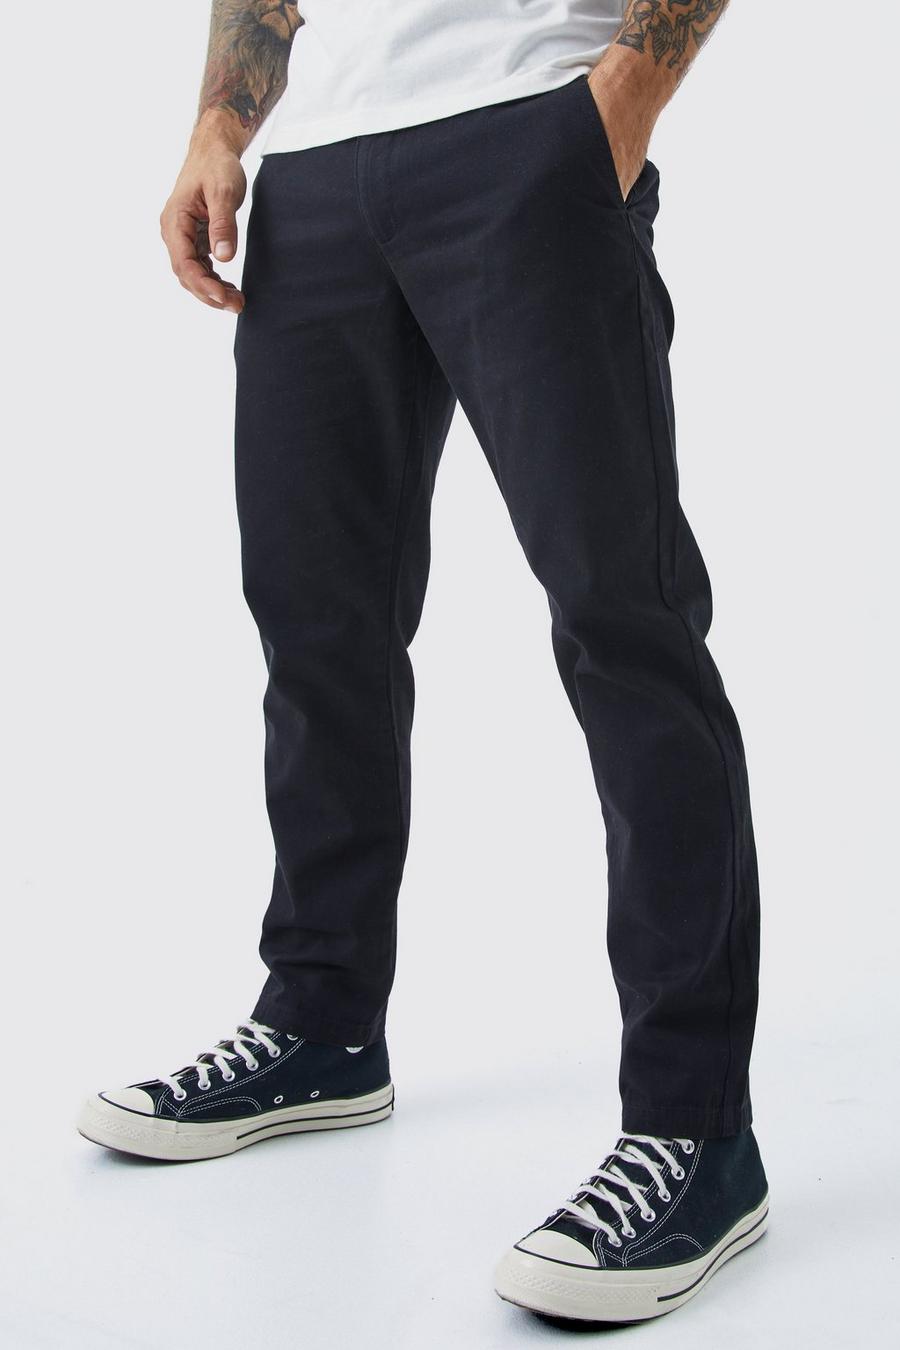 Pantalón chino pesquero ajustado con cintura fija, Black negro